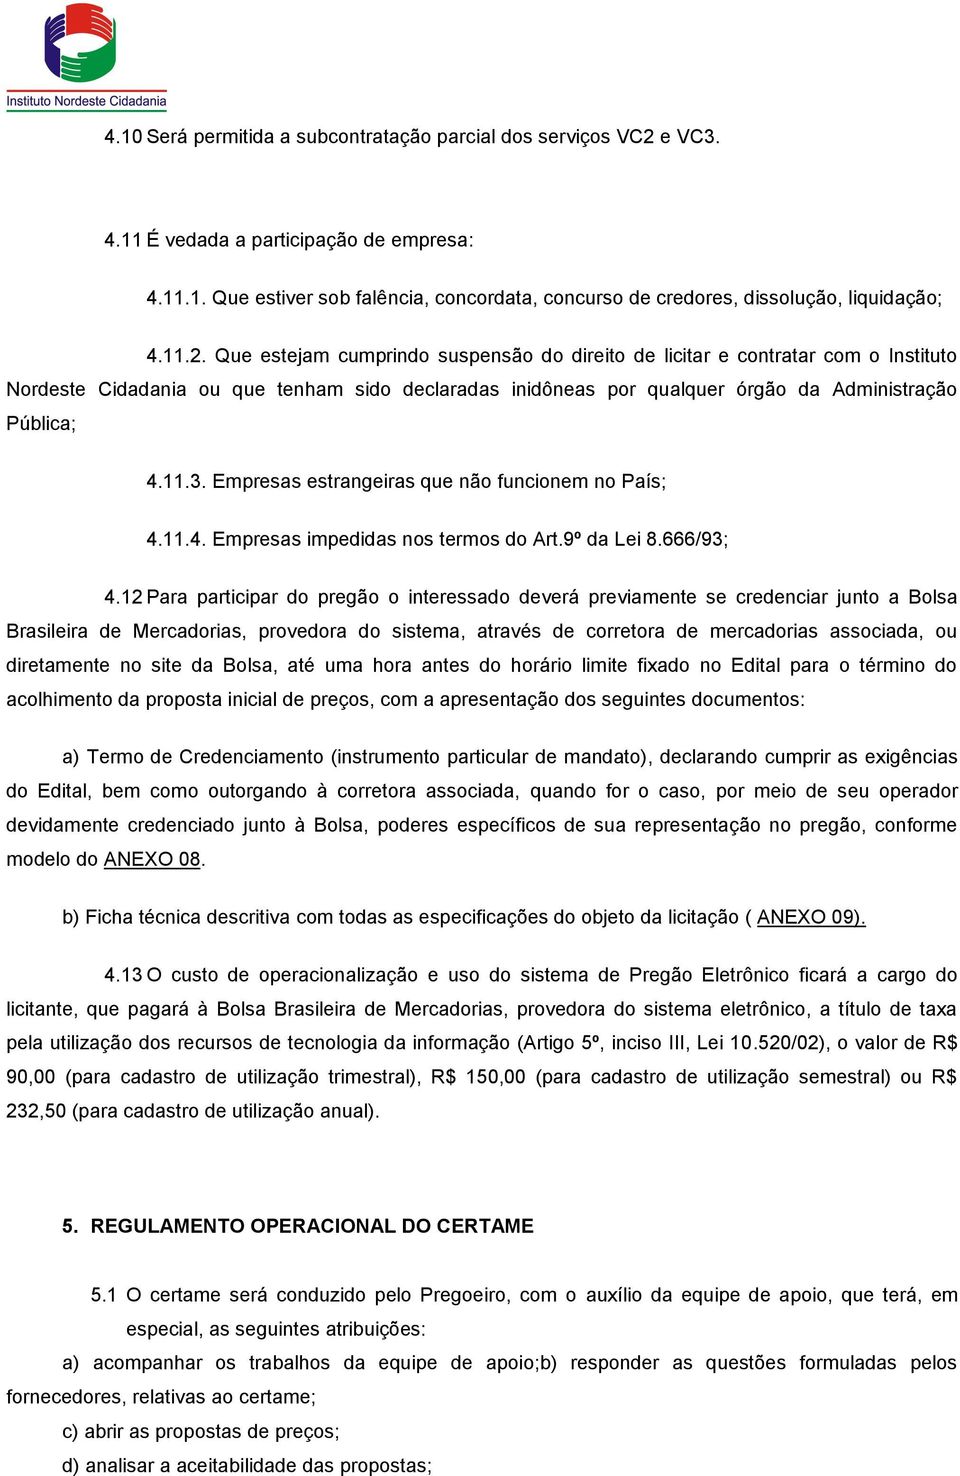 Empresas estrangeiras que não funcionem no País; 4.11.4. Empresas impedidas nos termos do Art.9º da Lei 8.666/93; 4.